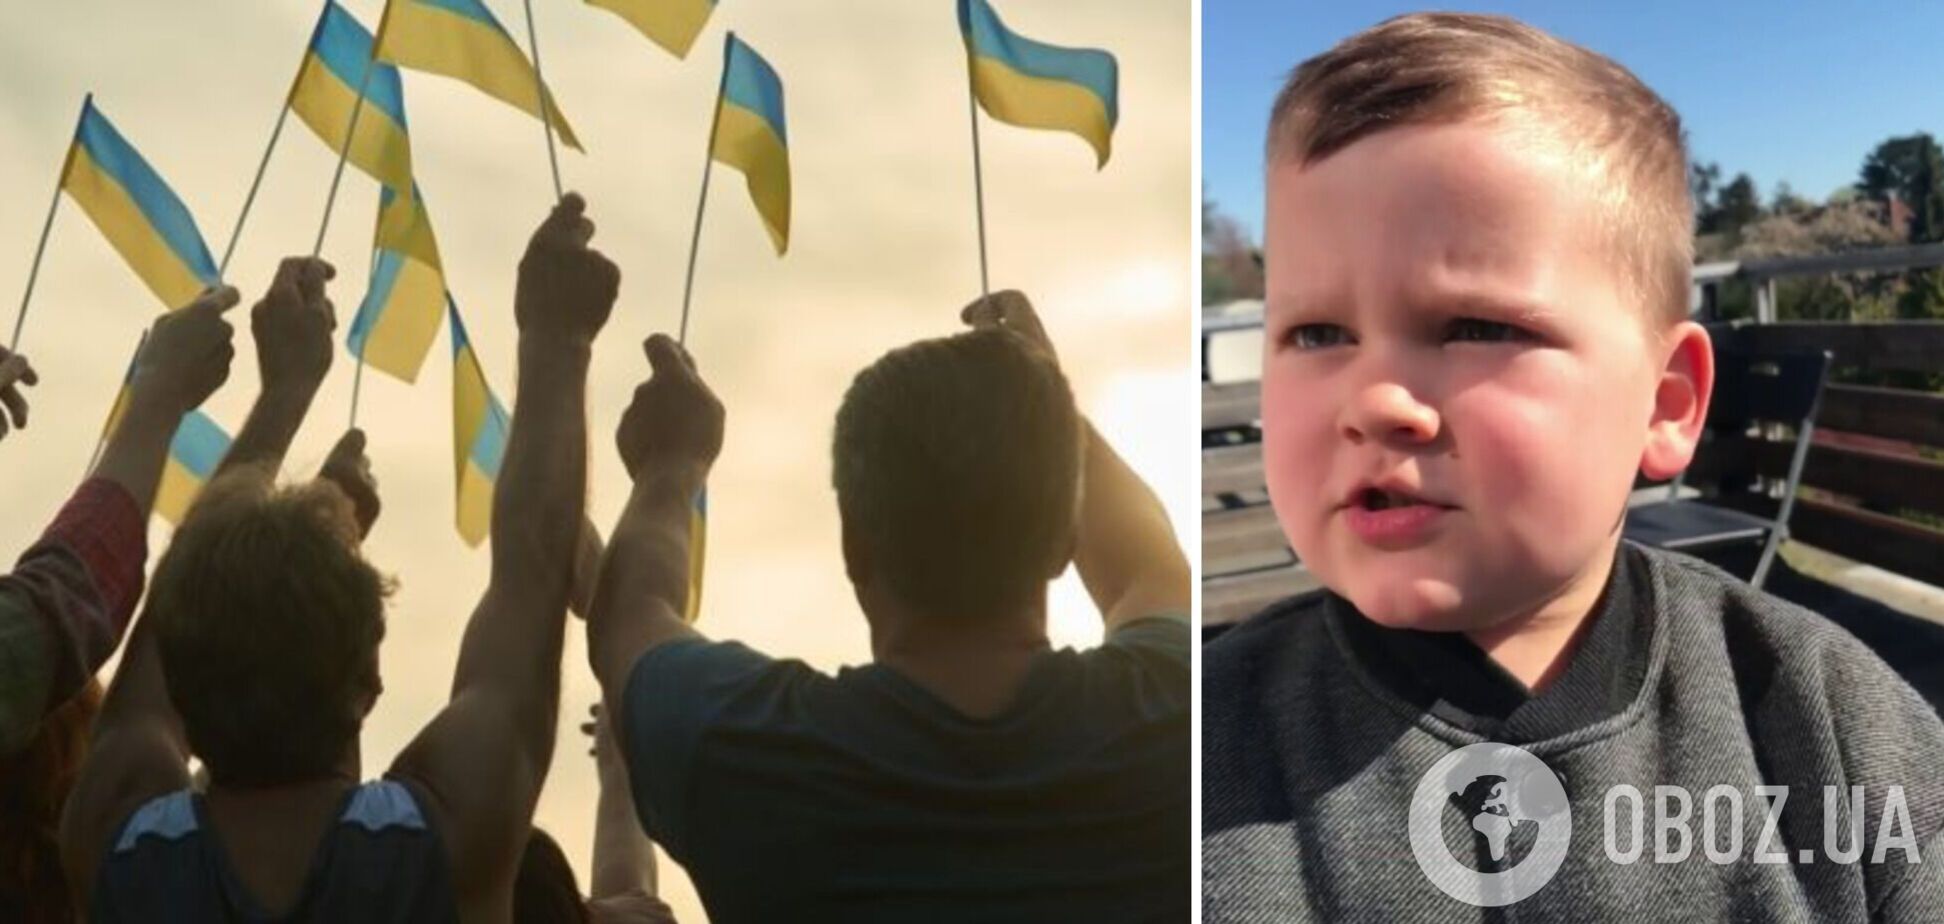 'Держите кулаки за Украину!' Ободряющее обращение маленького мальчика растрогало сеть